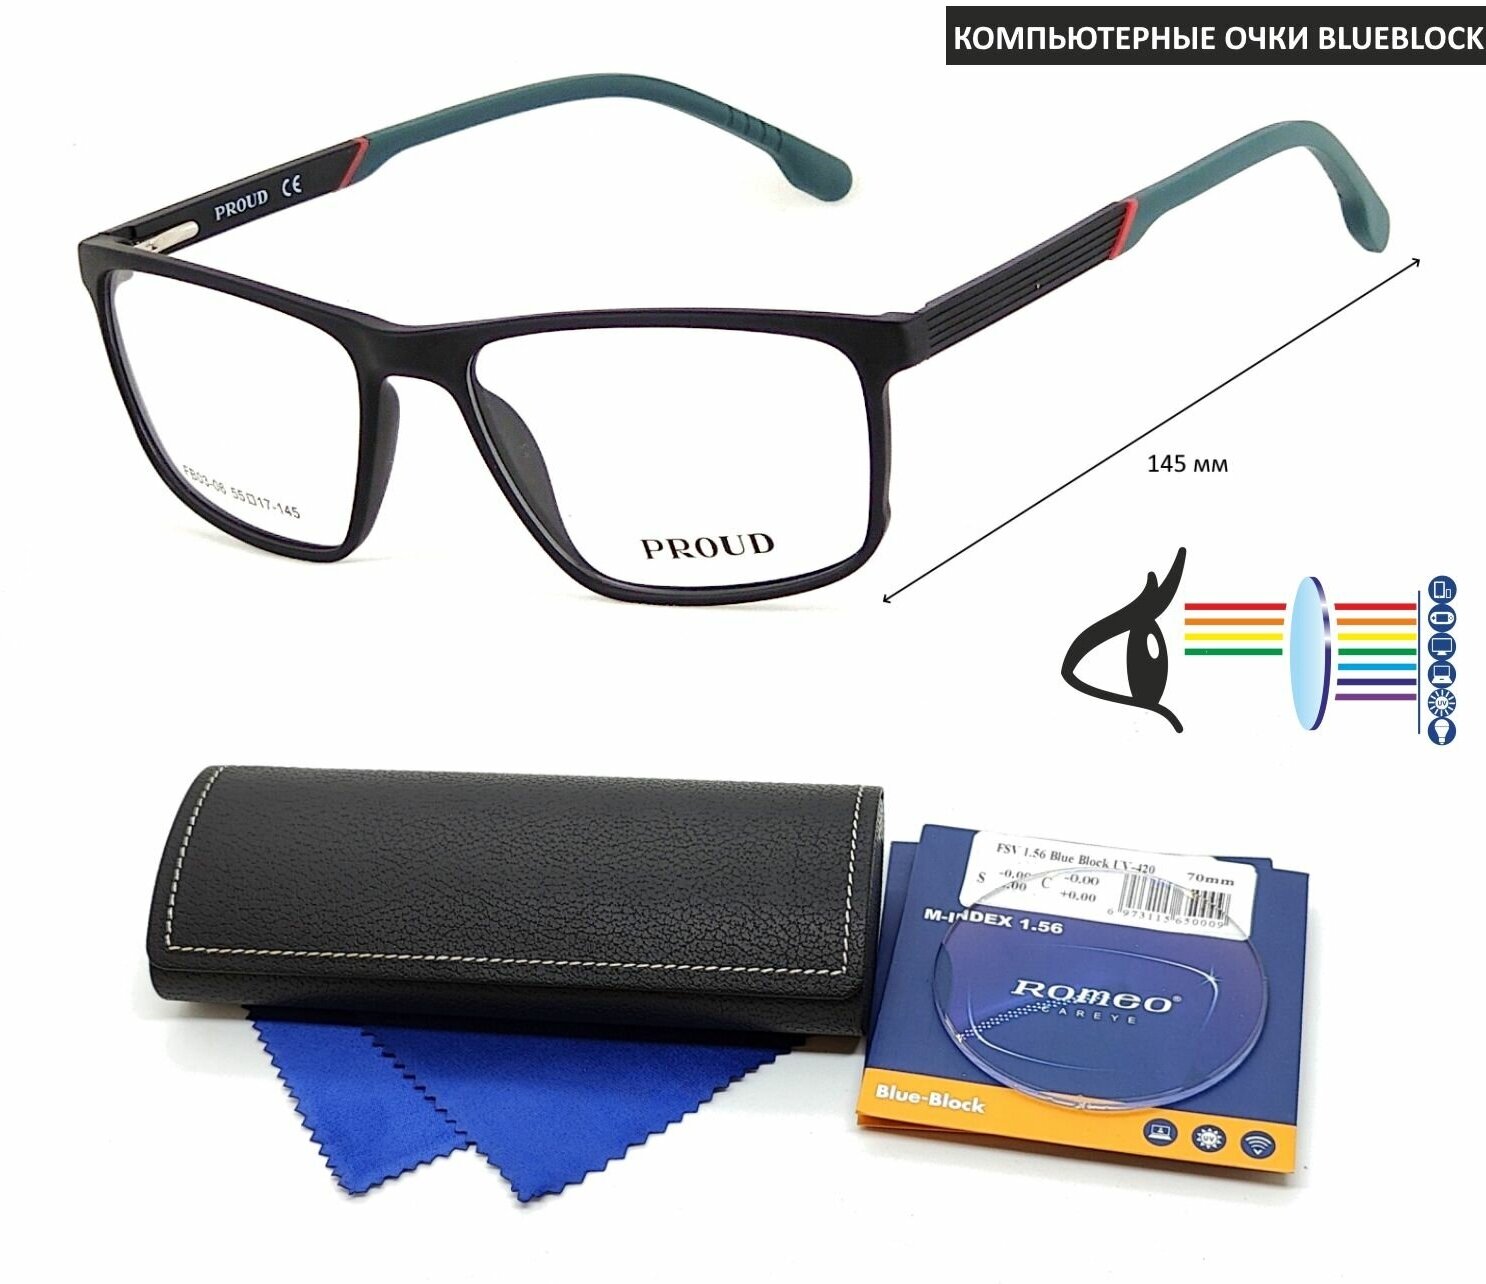 Компьютерные очки с футляром на магните PROUD мод. FB03-06 Цвет 1 с линзами ROMEO 1.56 Blue Block +1.75 РЦ 64-66